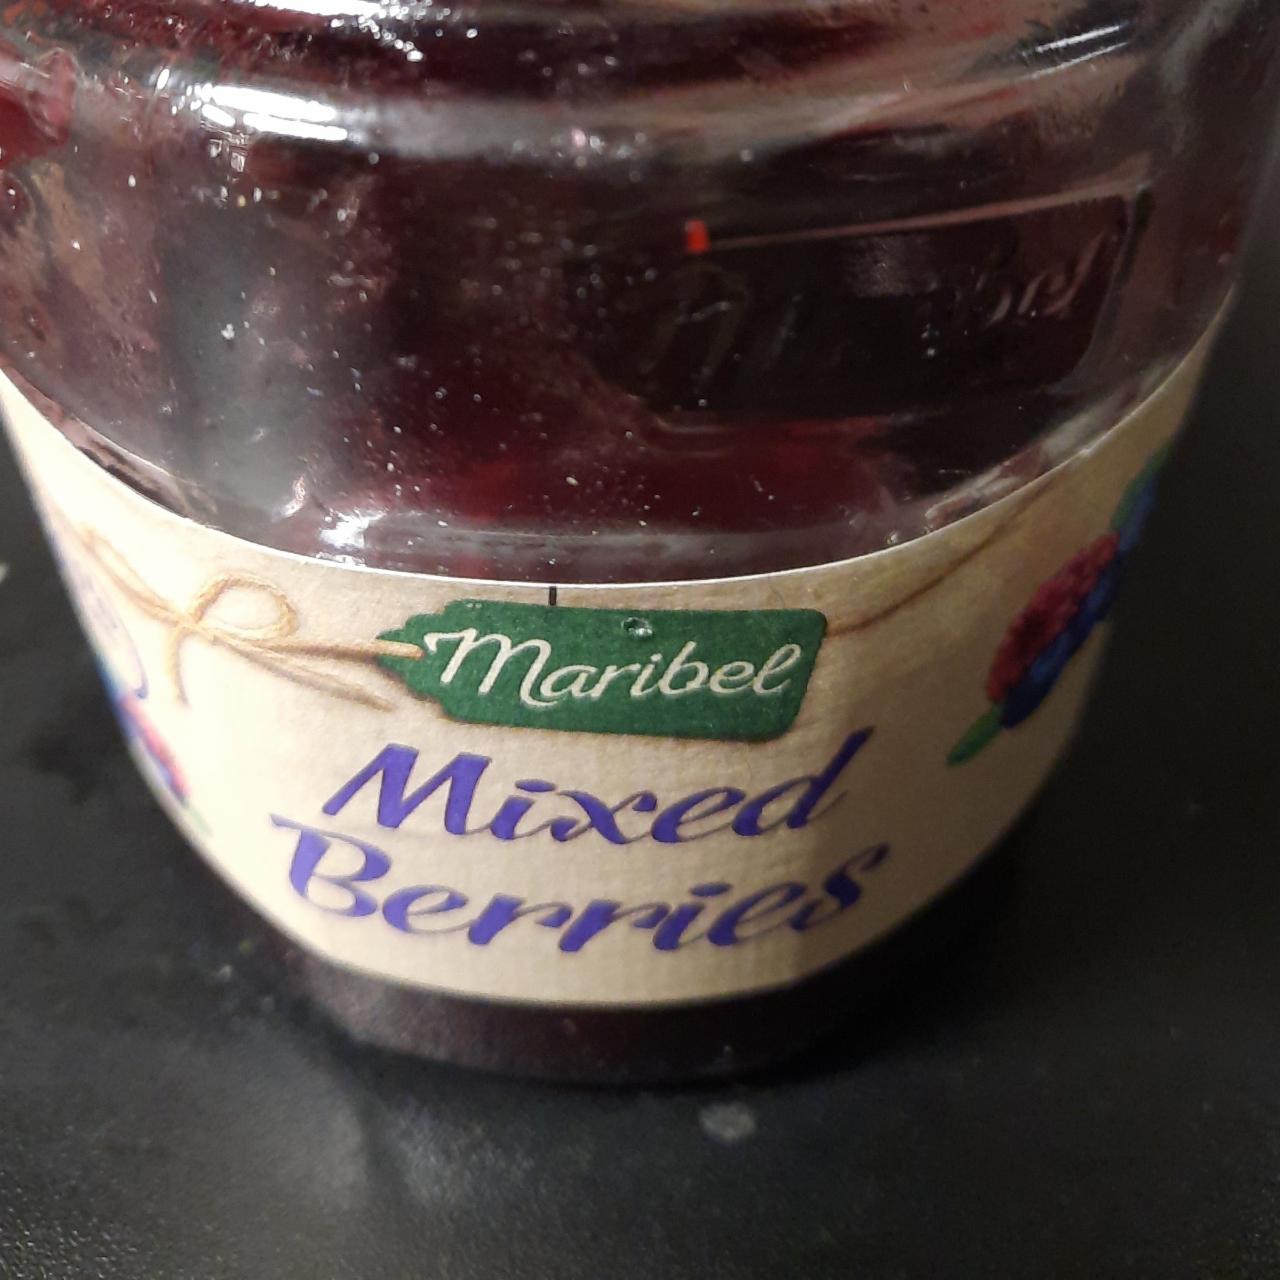 Fotografie - Mixed berries (výběrový džem z malin, borůvek a ostružin) Maribel